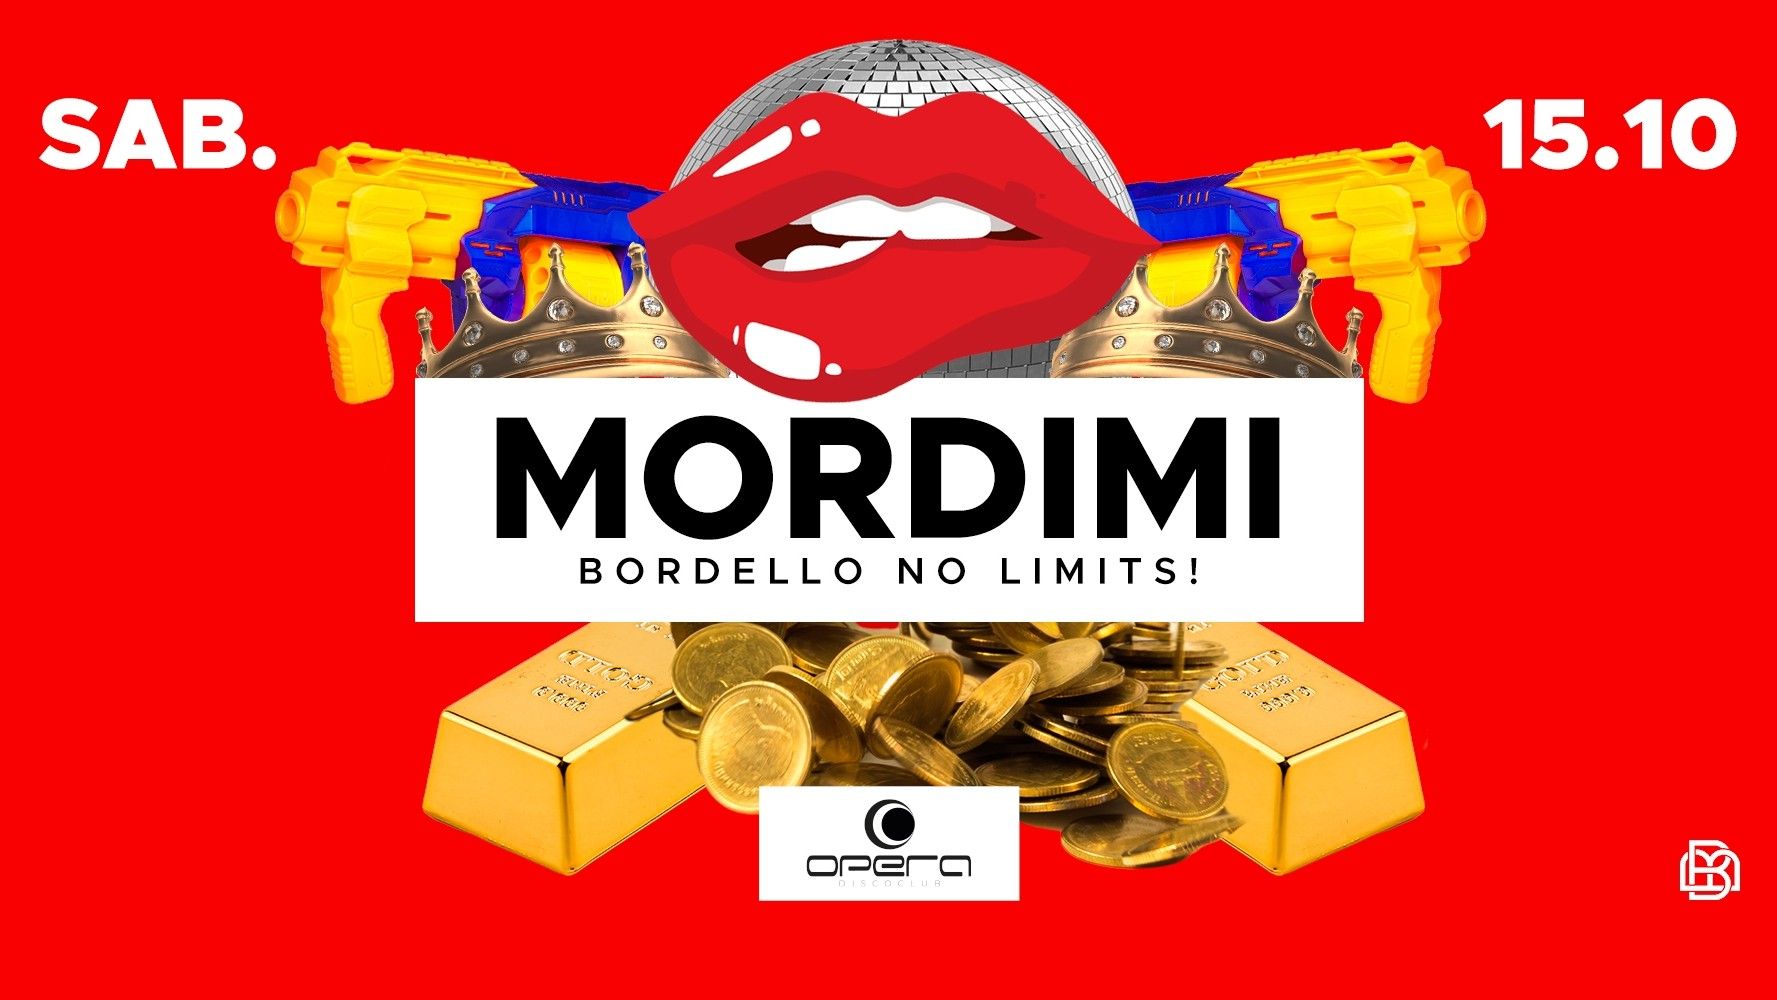 MORDIMI Bordello No Limits!